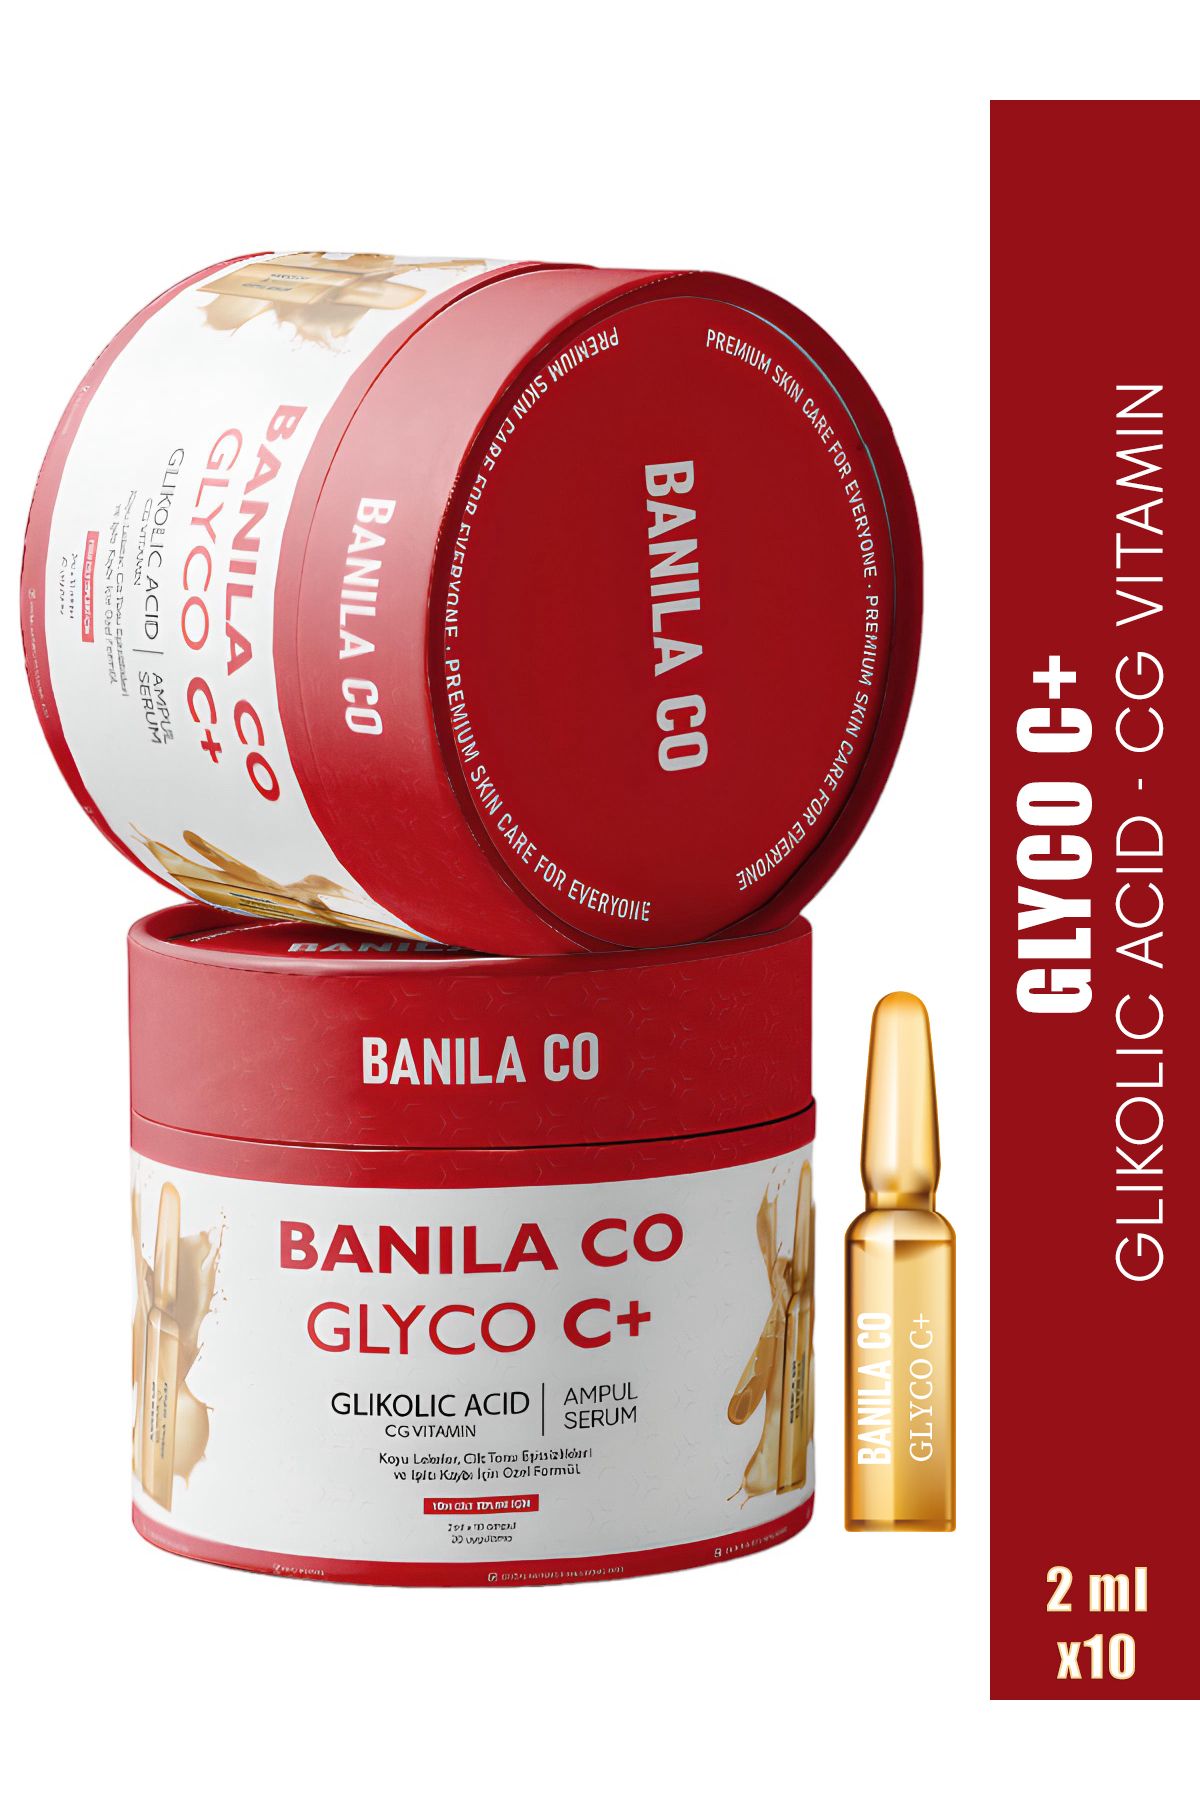 Banila Co Glycolic Acid Serum, Leke Karşıtı, Gözenek Sıkılaştırıcı, Glyco C Serum 2 ml X 10